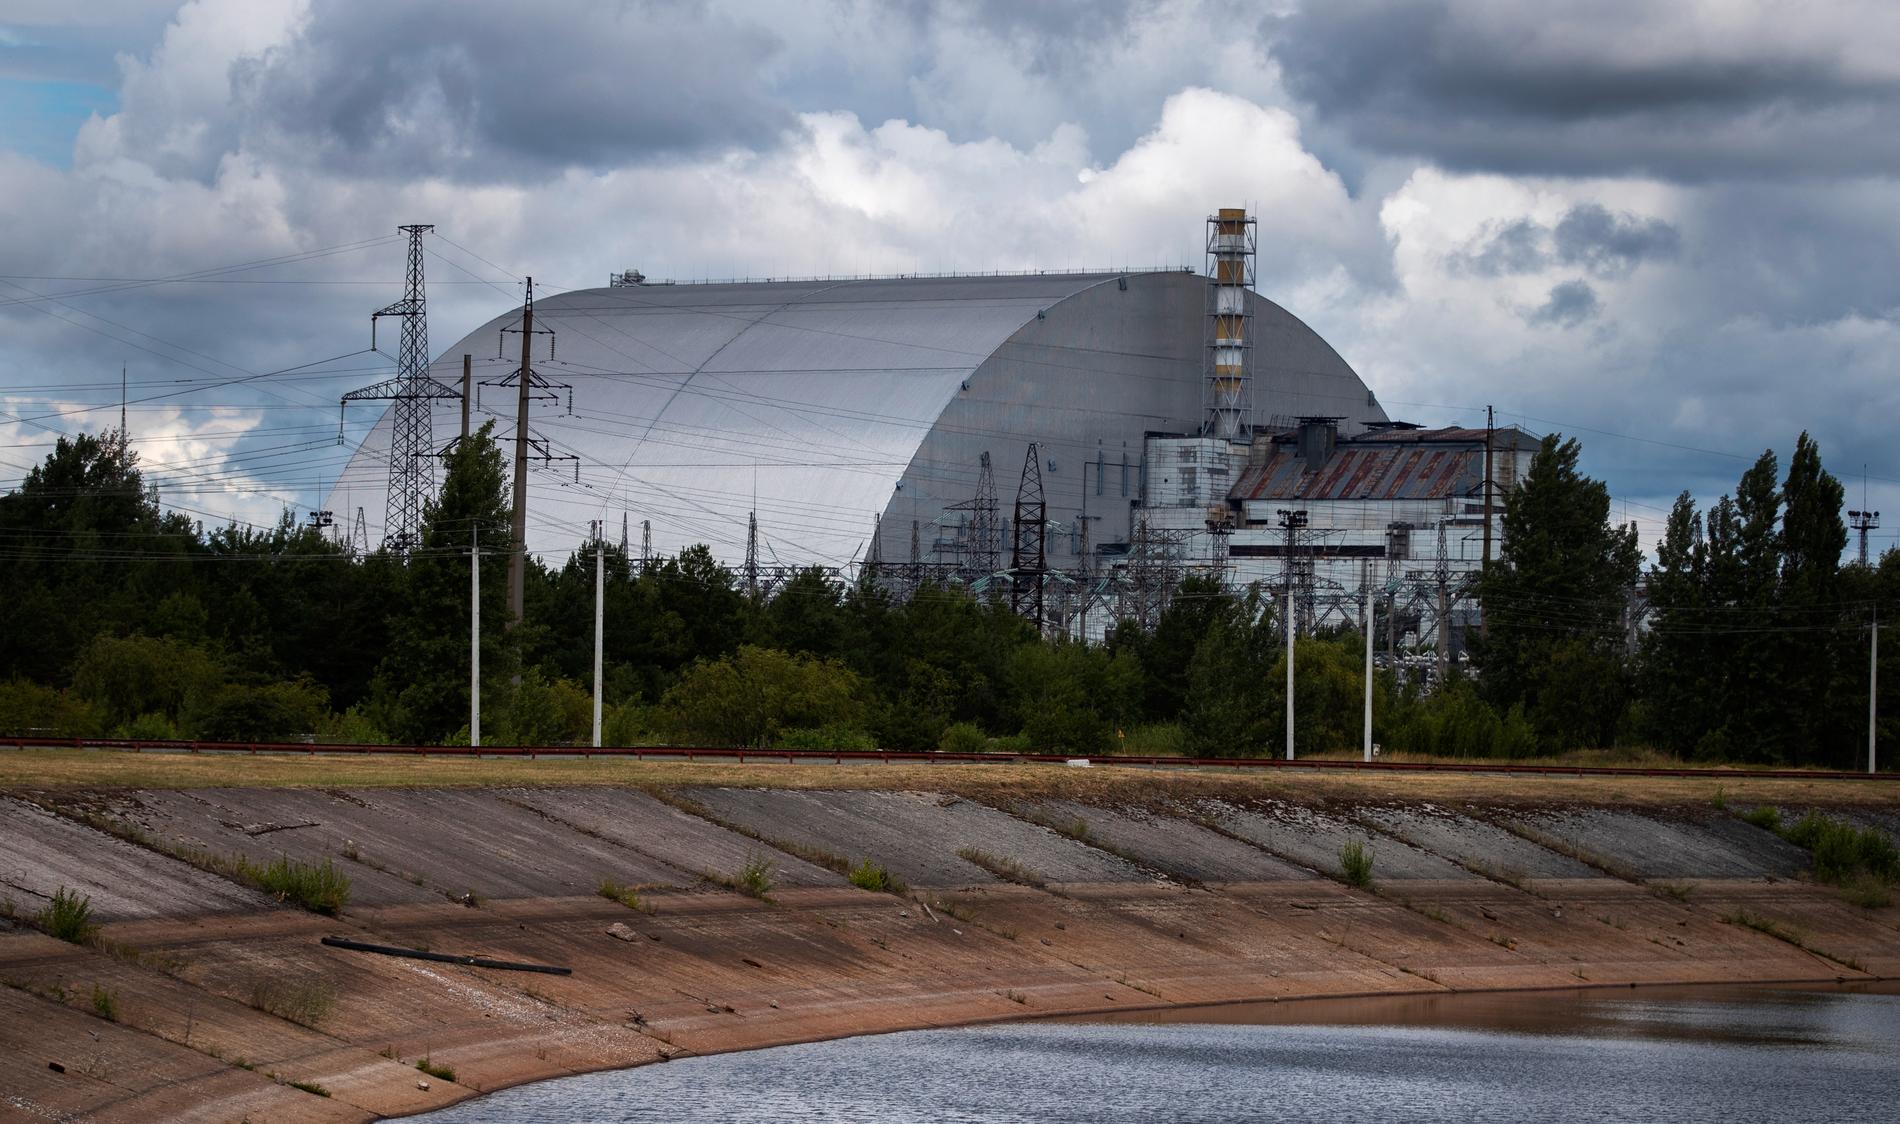 Tjernobylreaktorn har stängts in i en ny metallkupol som hindrar radioaktiv strålning från att läcka ut.